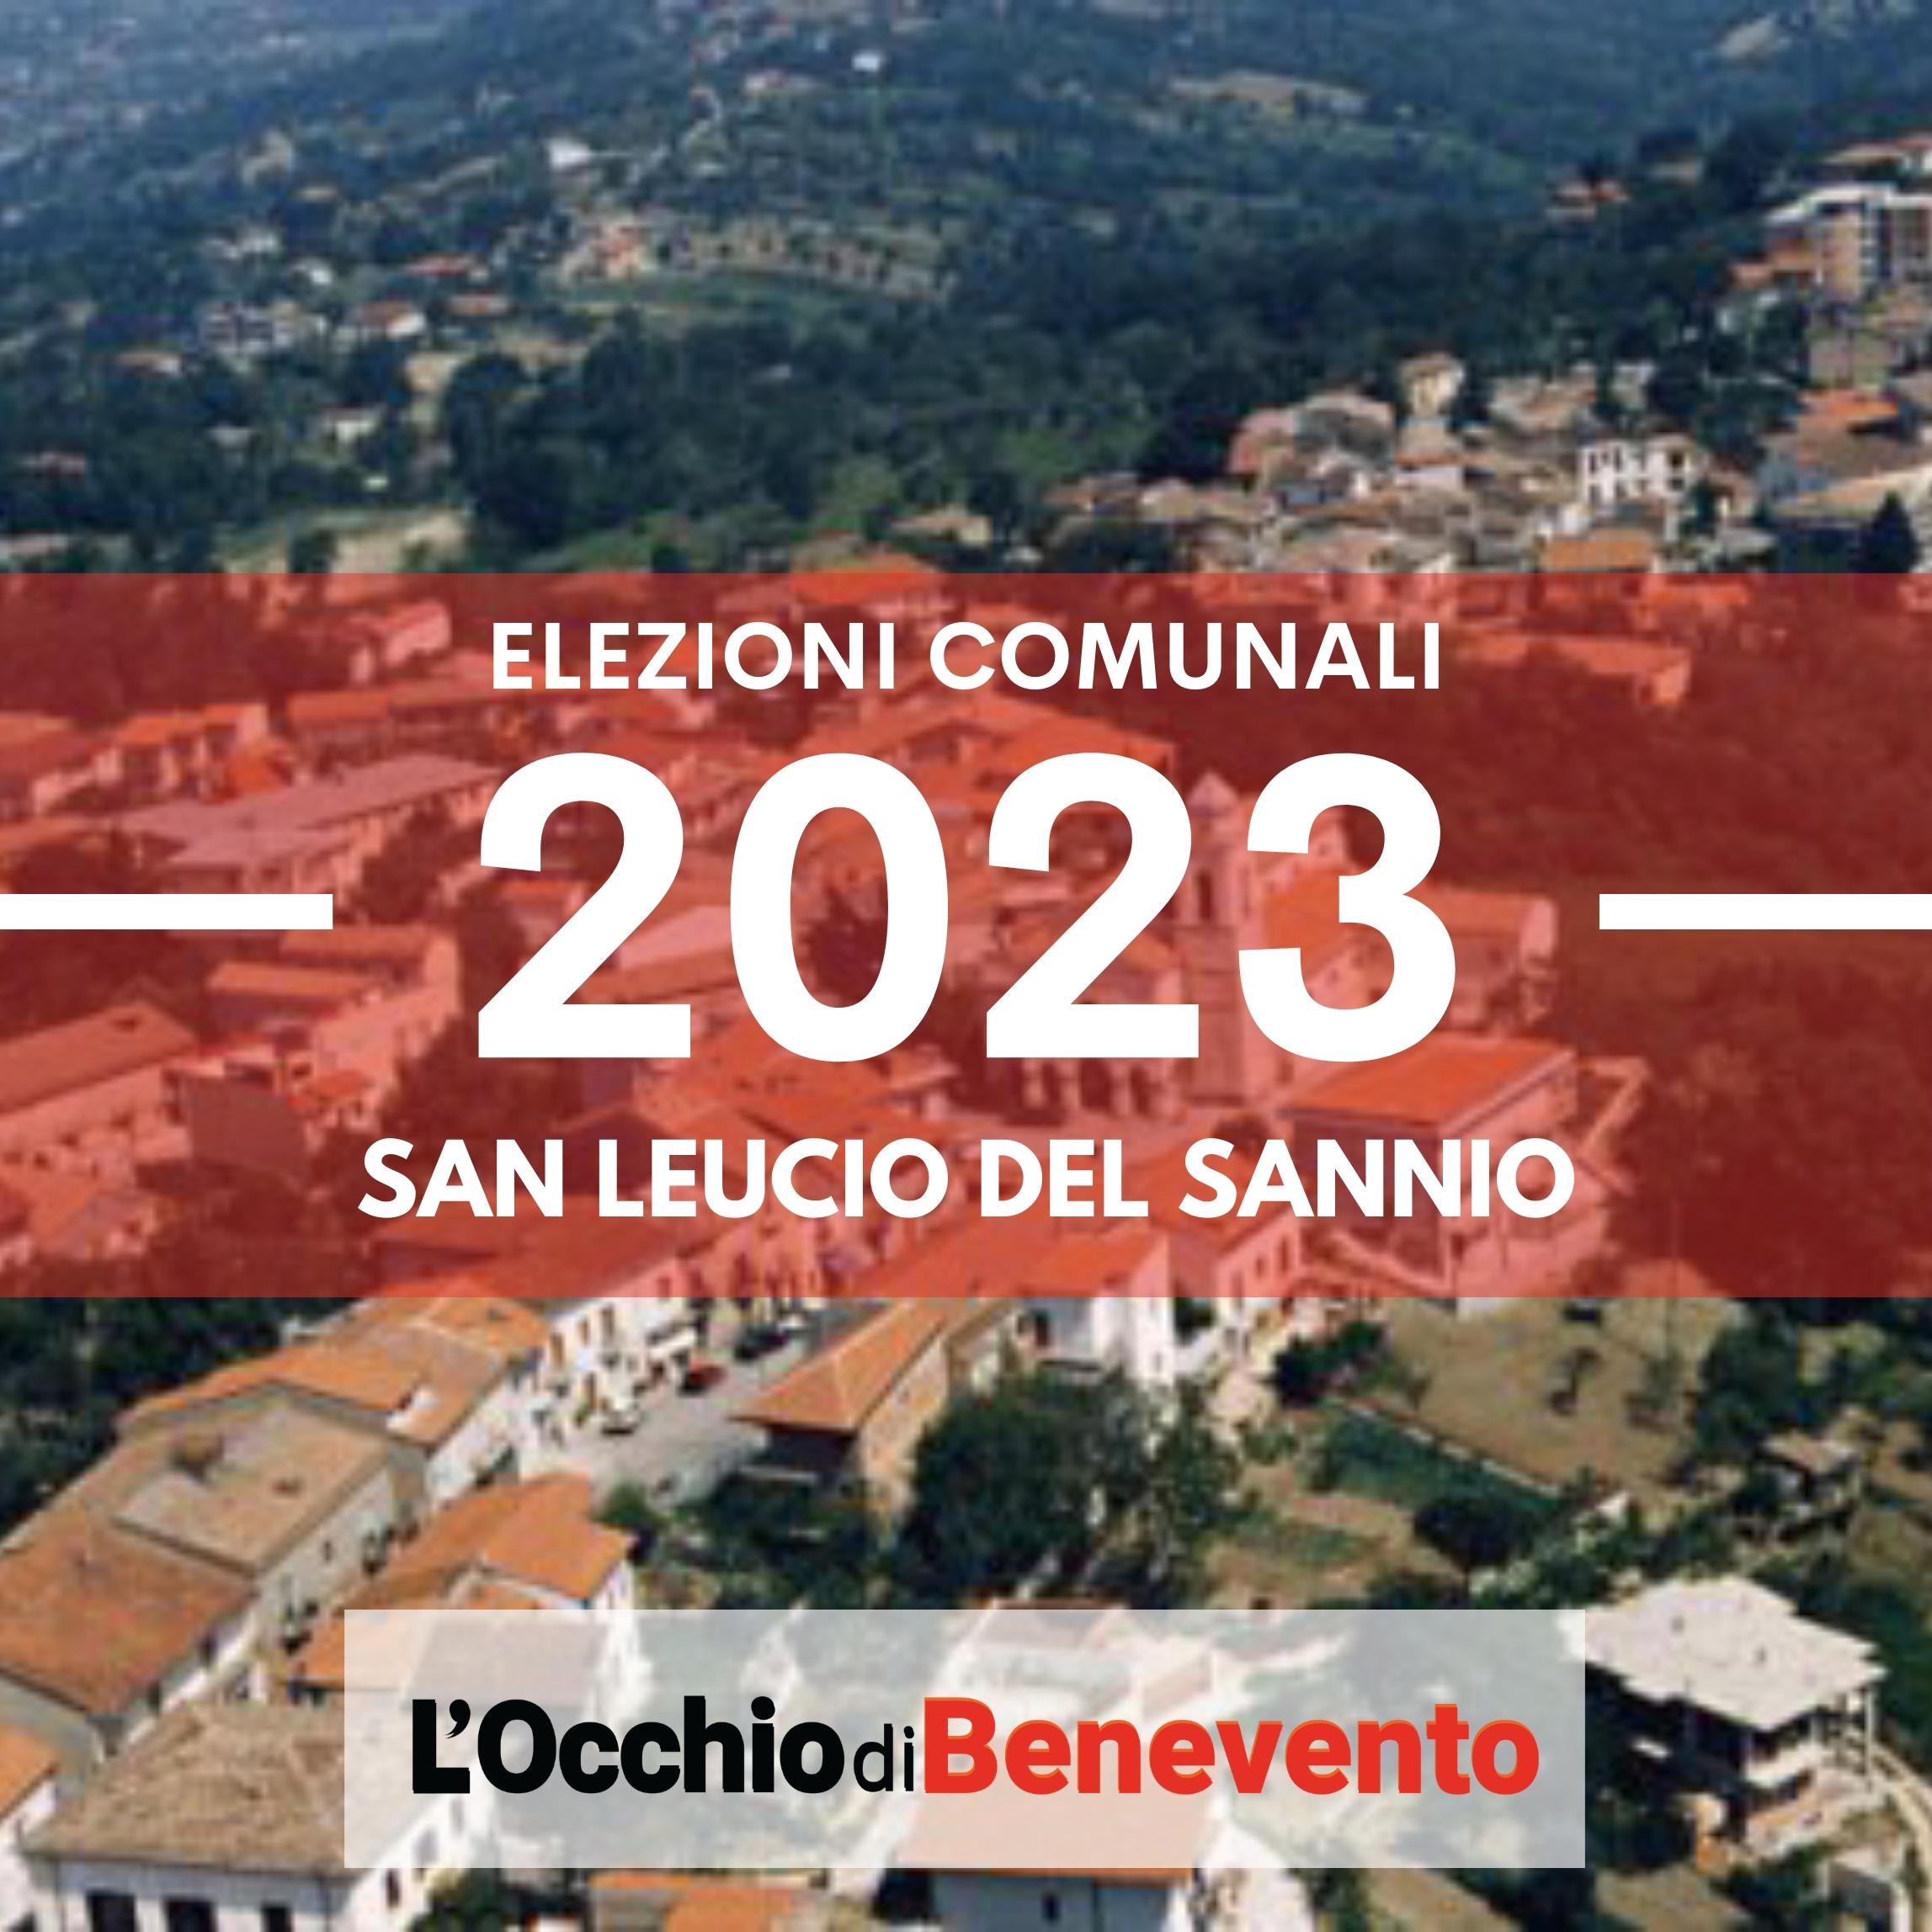 Elezioni comunali 2023 San Leucio del Sannio liste candidati